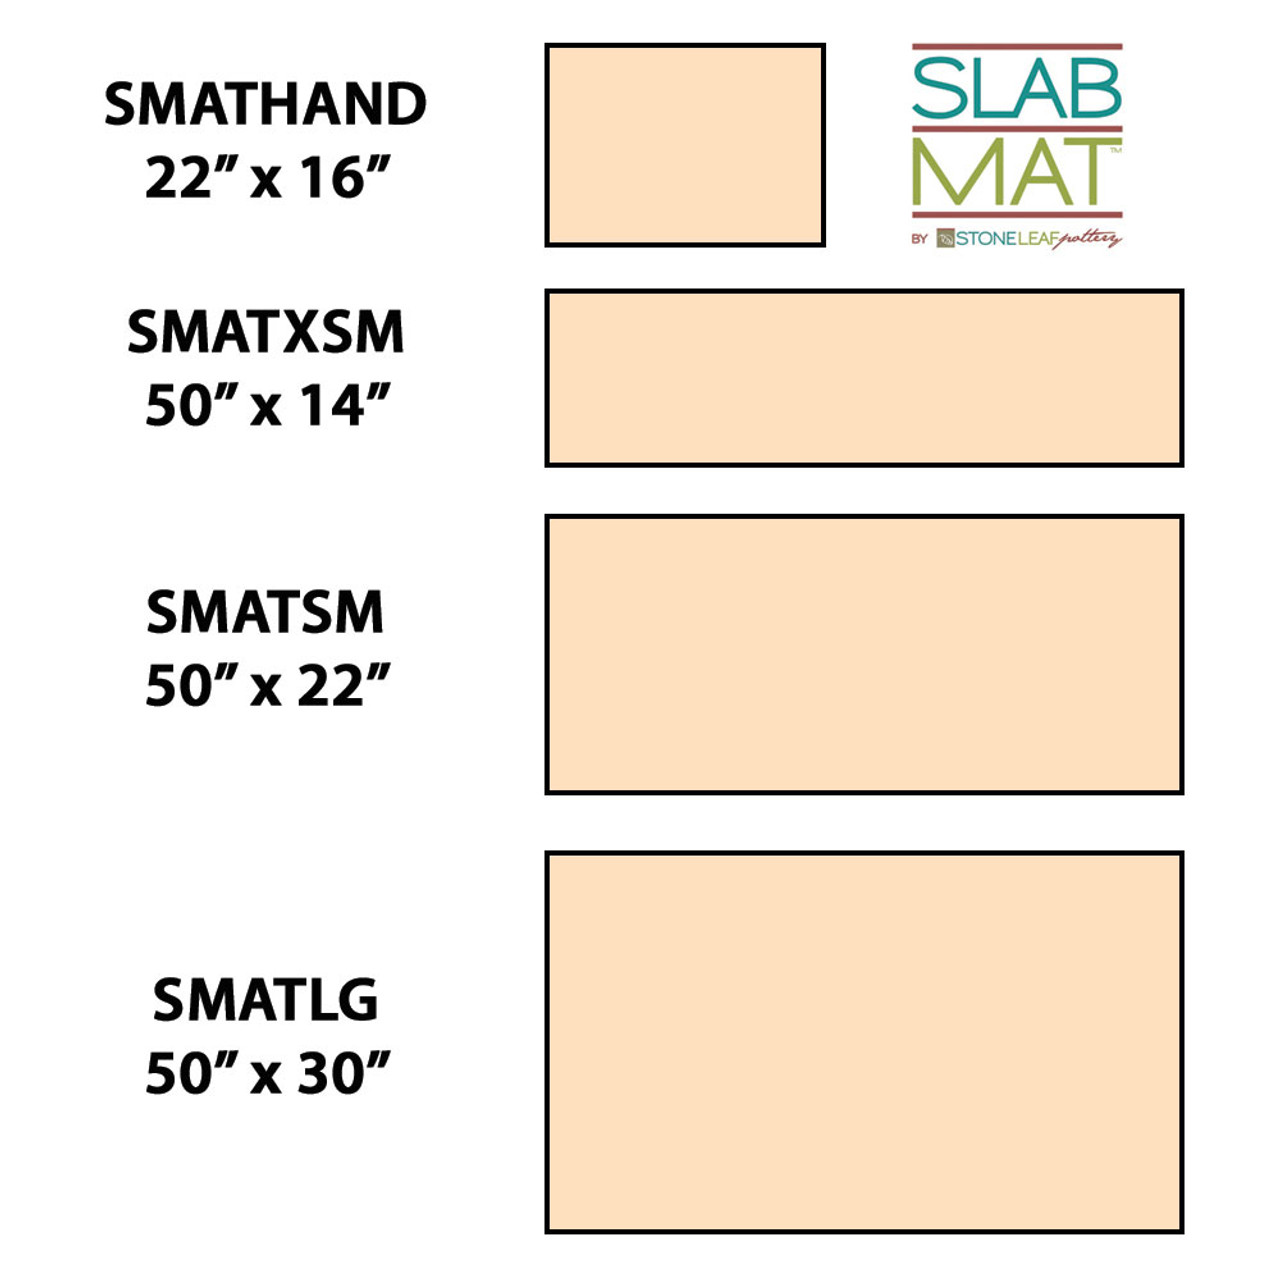 SlabMat - 16" wide X 22"